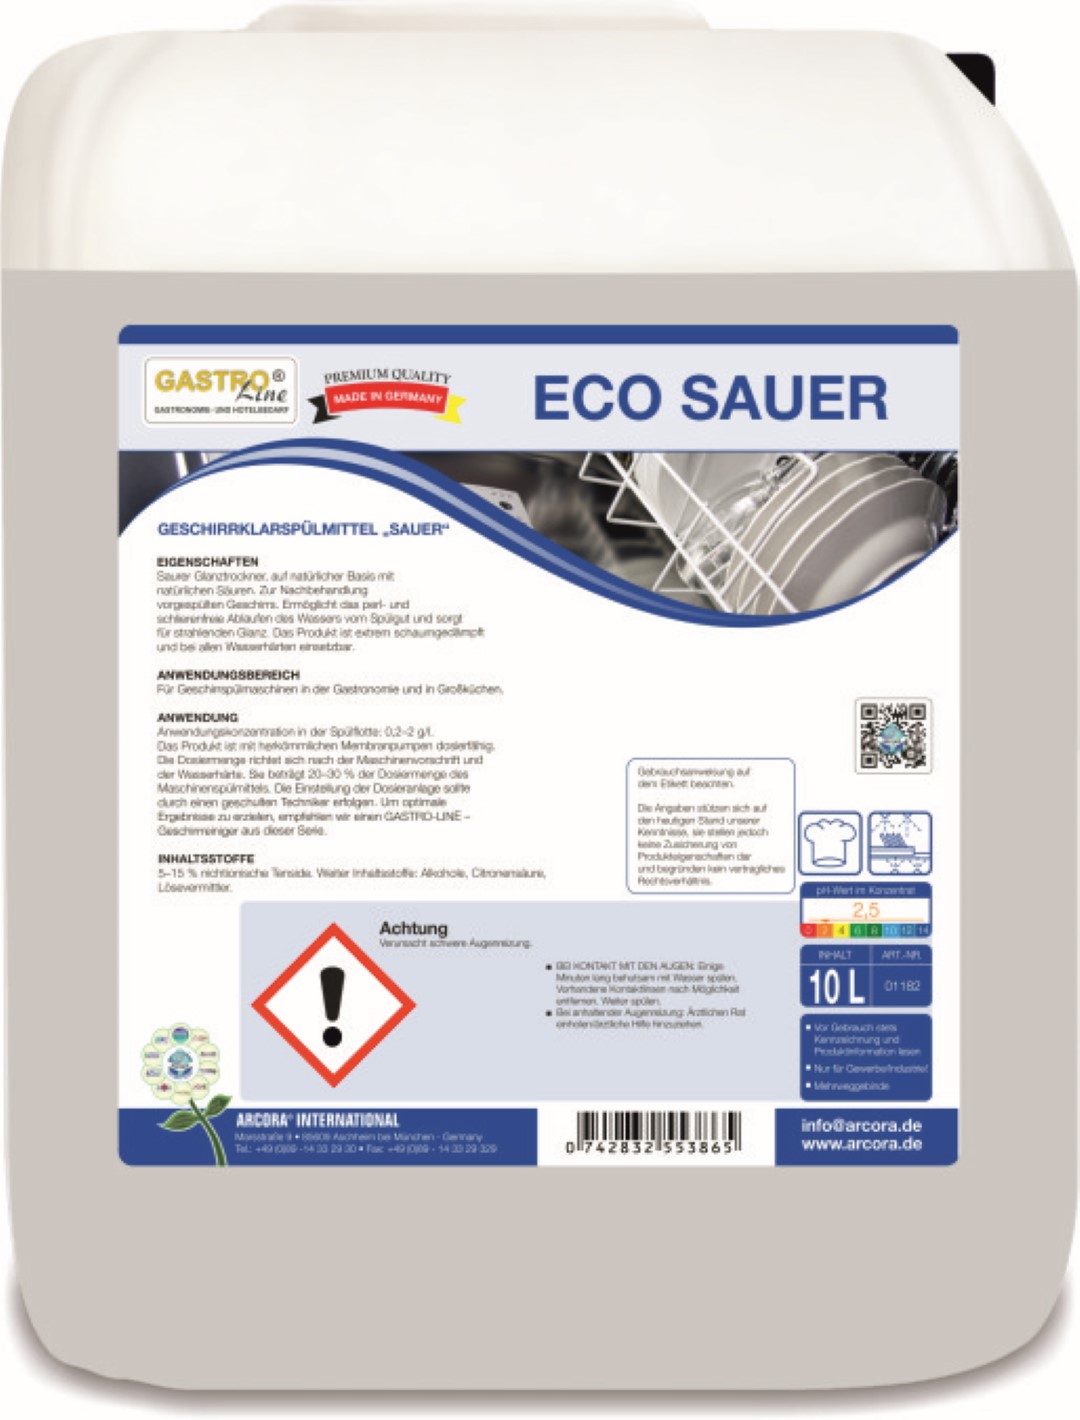  Eco Sauer | Geschirrklarspülmittel | sauer | 10 Liter Kanister